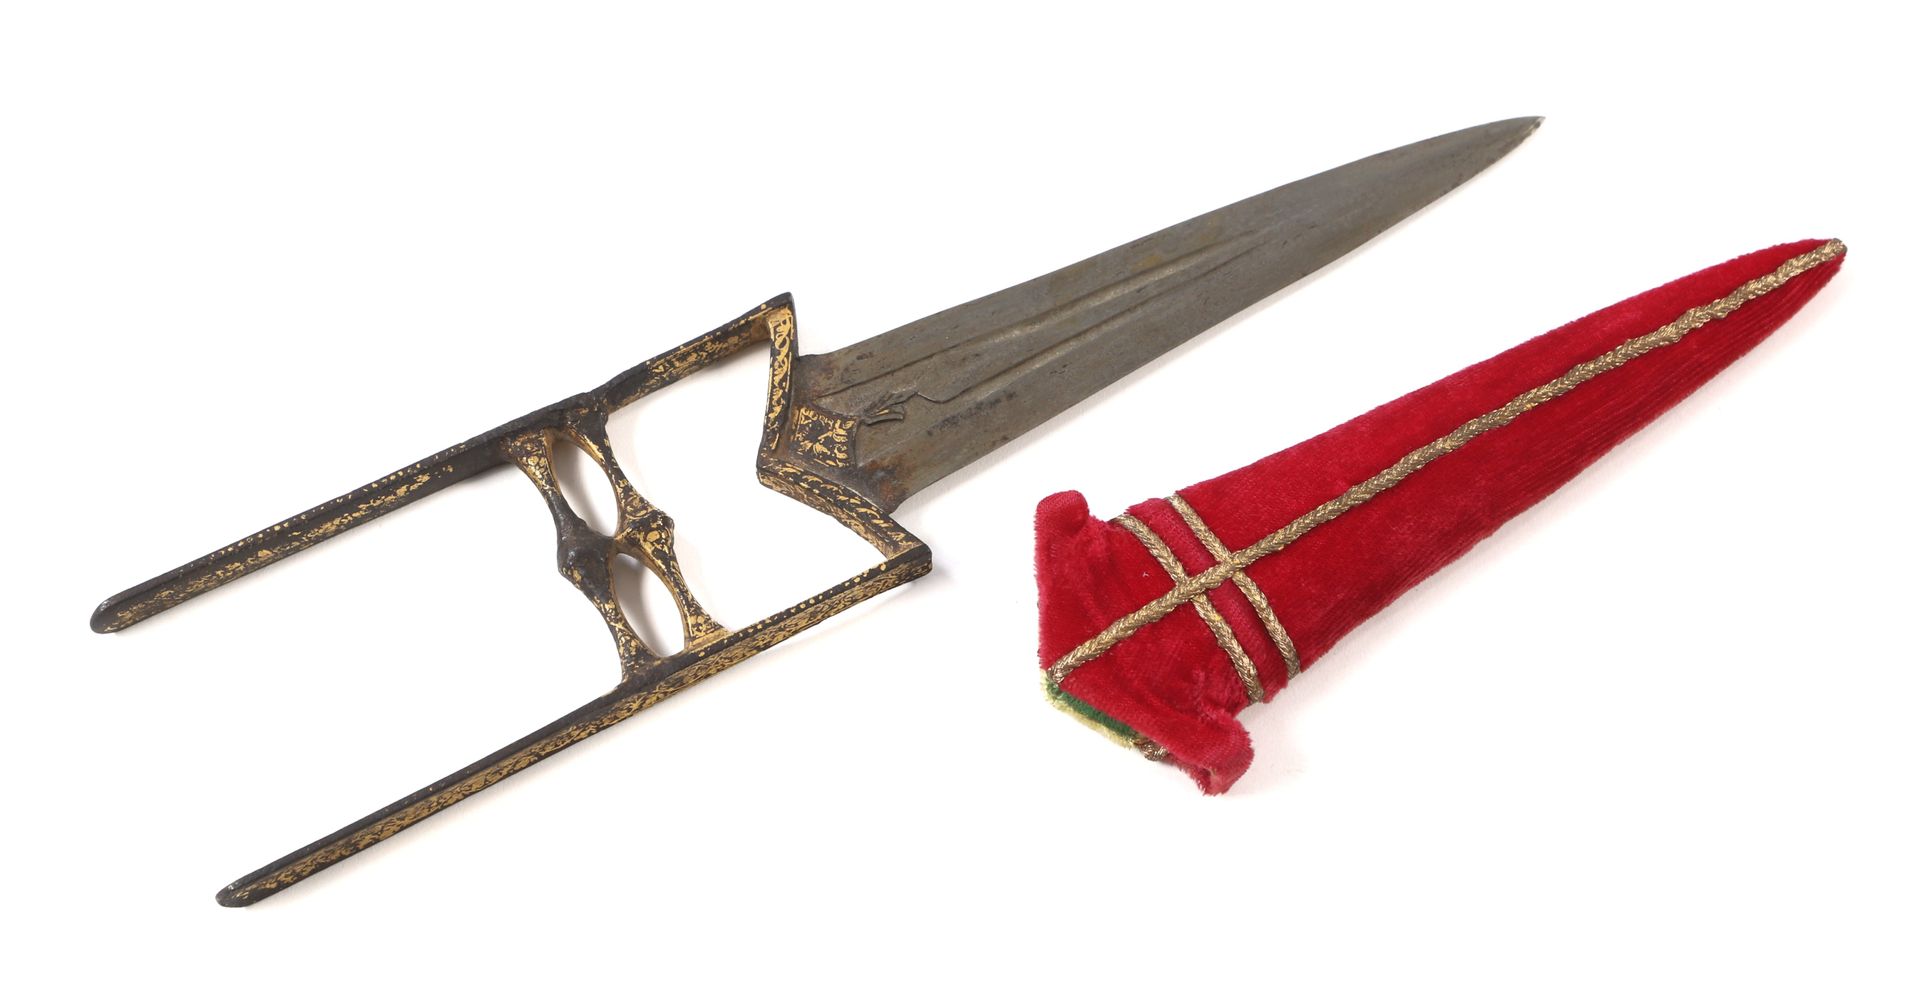 印度匕首 "Katar 
手柄有两个分支和两个支架，铁质，富含黄金。三角形刀刃，后跟处有金色装饰，有水沟。 
后来的刀鞘上覆盖着红色天鹅绒。 
A.B.E.（黄&hellip;